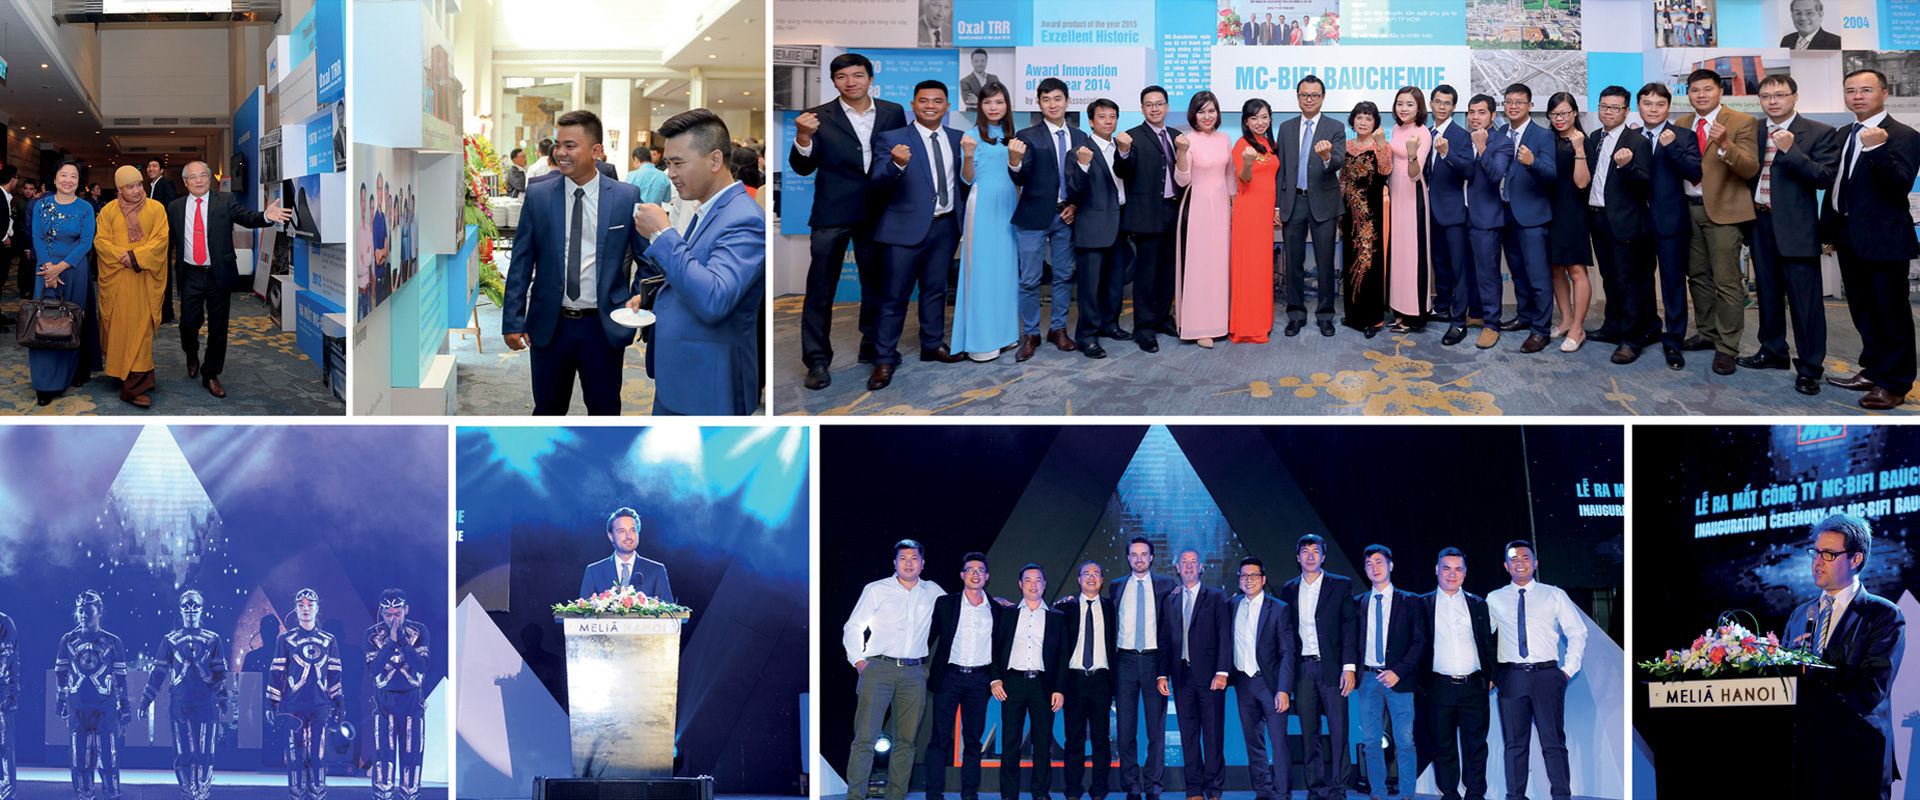 MC-Bauchemie engagiert sich in Vietnam und geht Joint Venture MC-BIFI Bauchemie ein